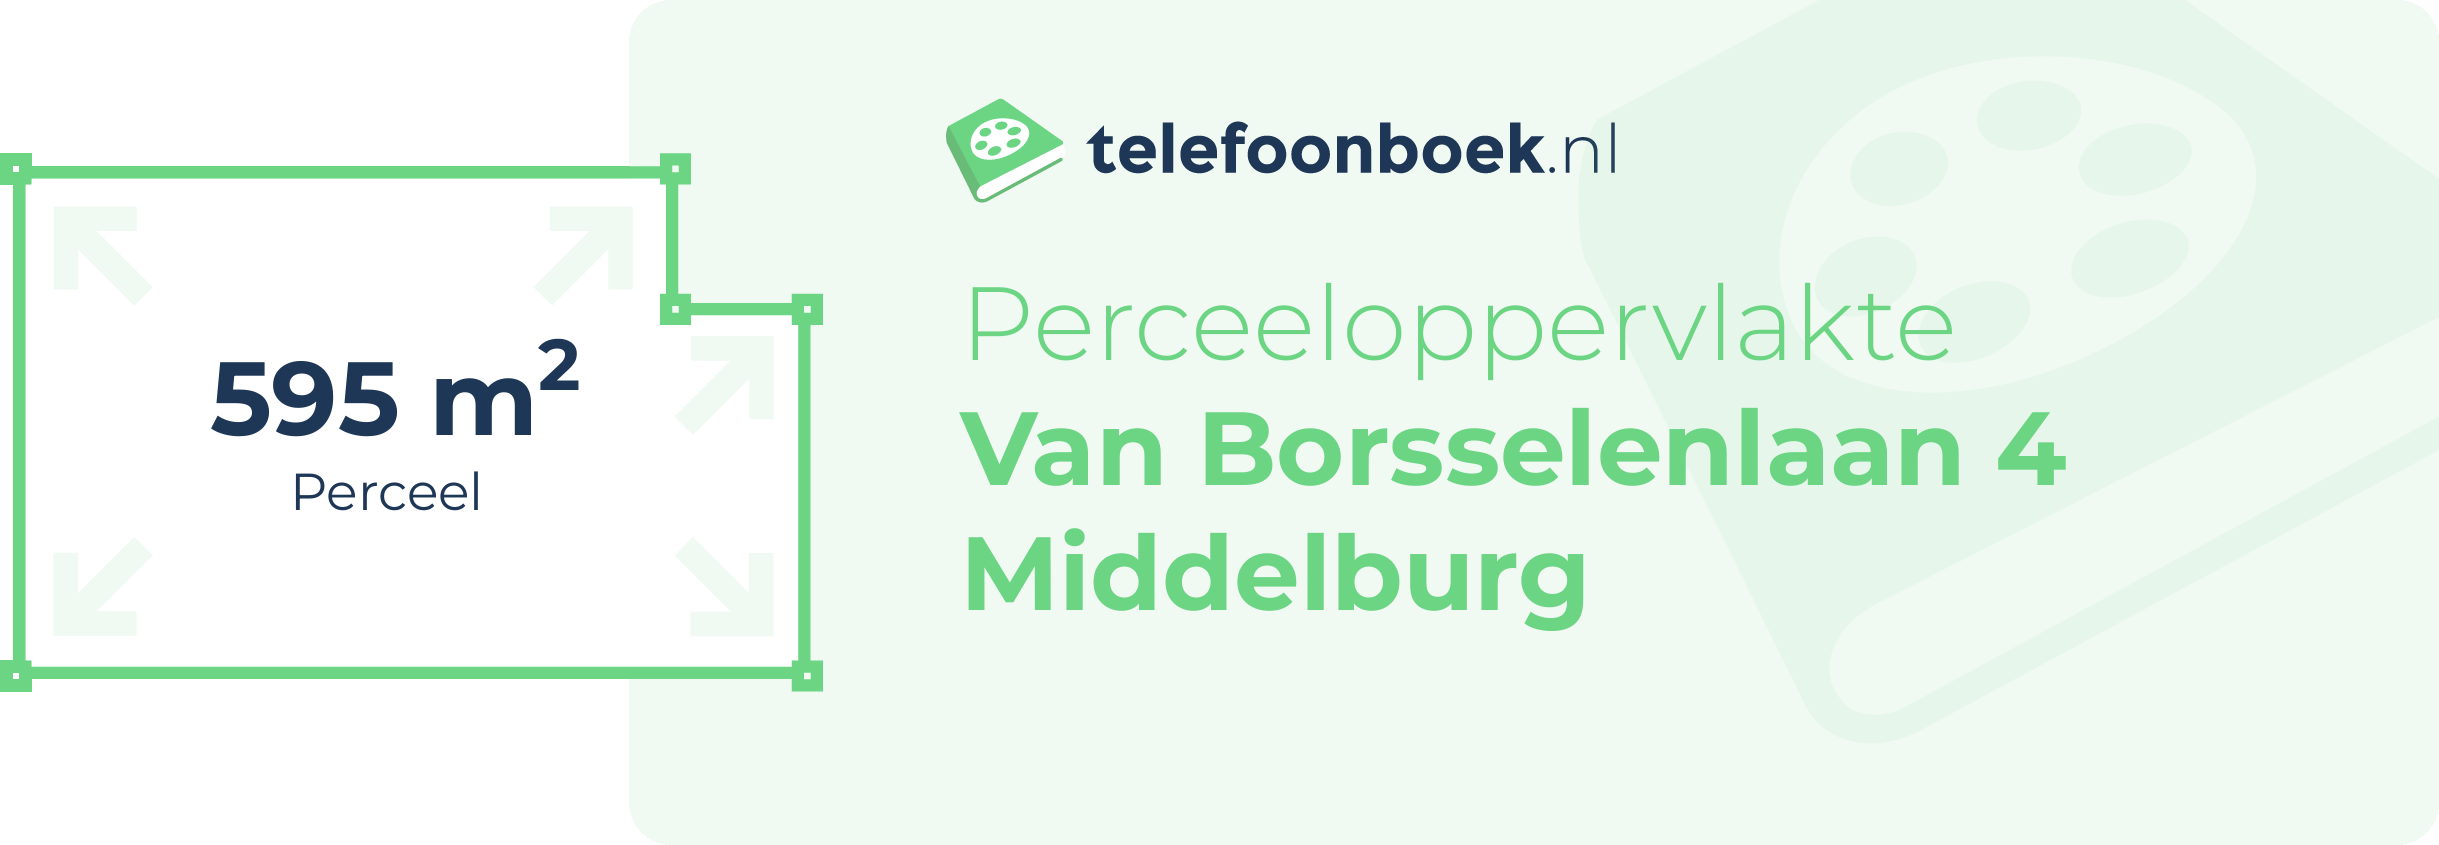 Perceeloppervlakte Van Borsselenlaan 4 Middelburg